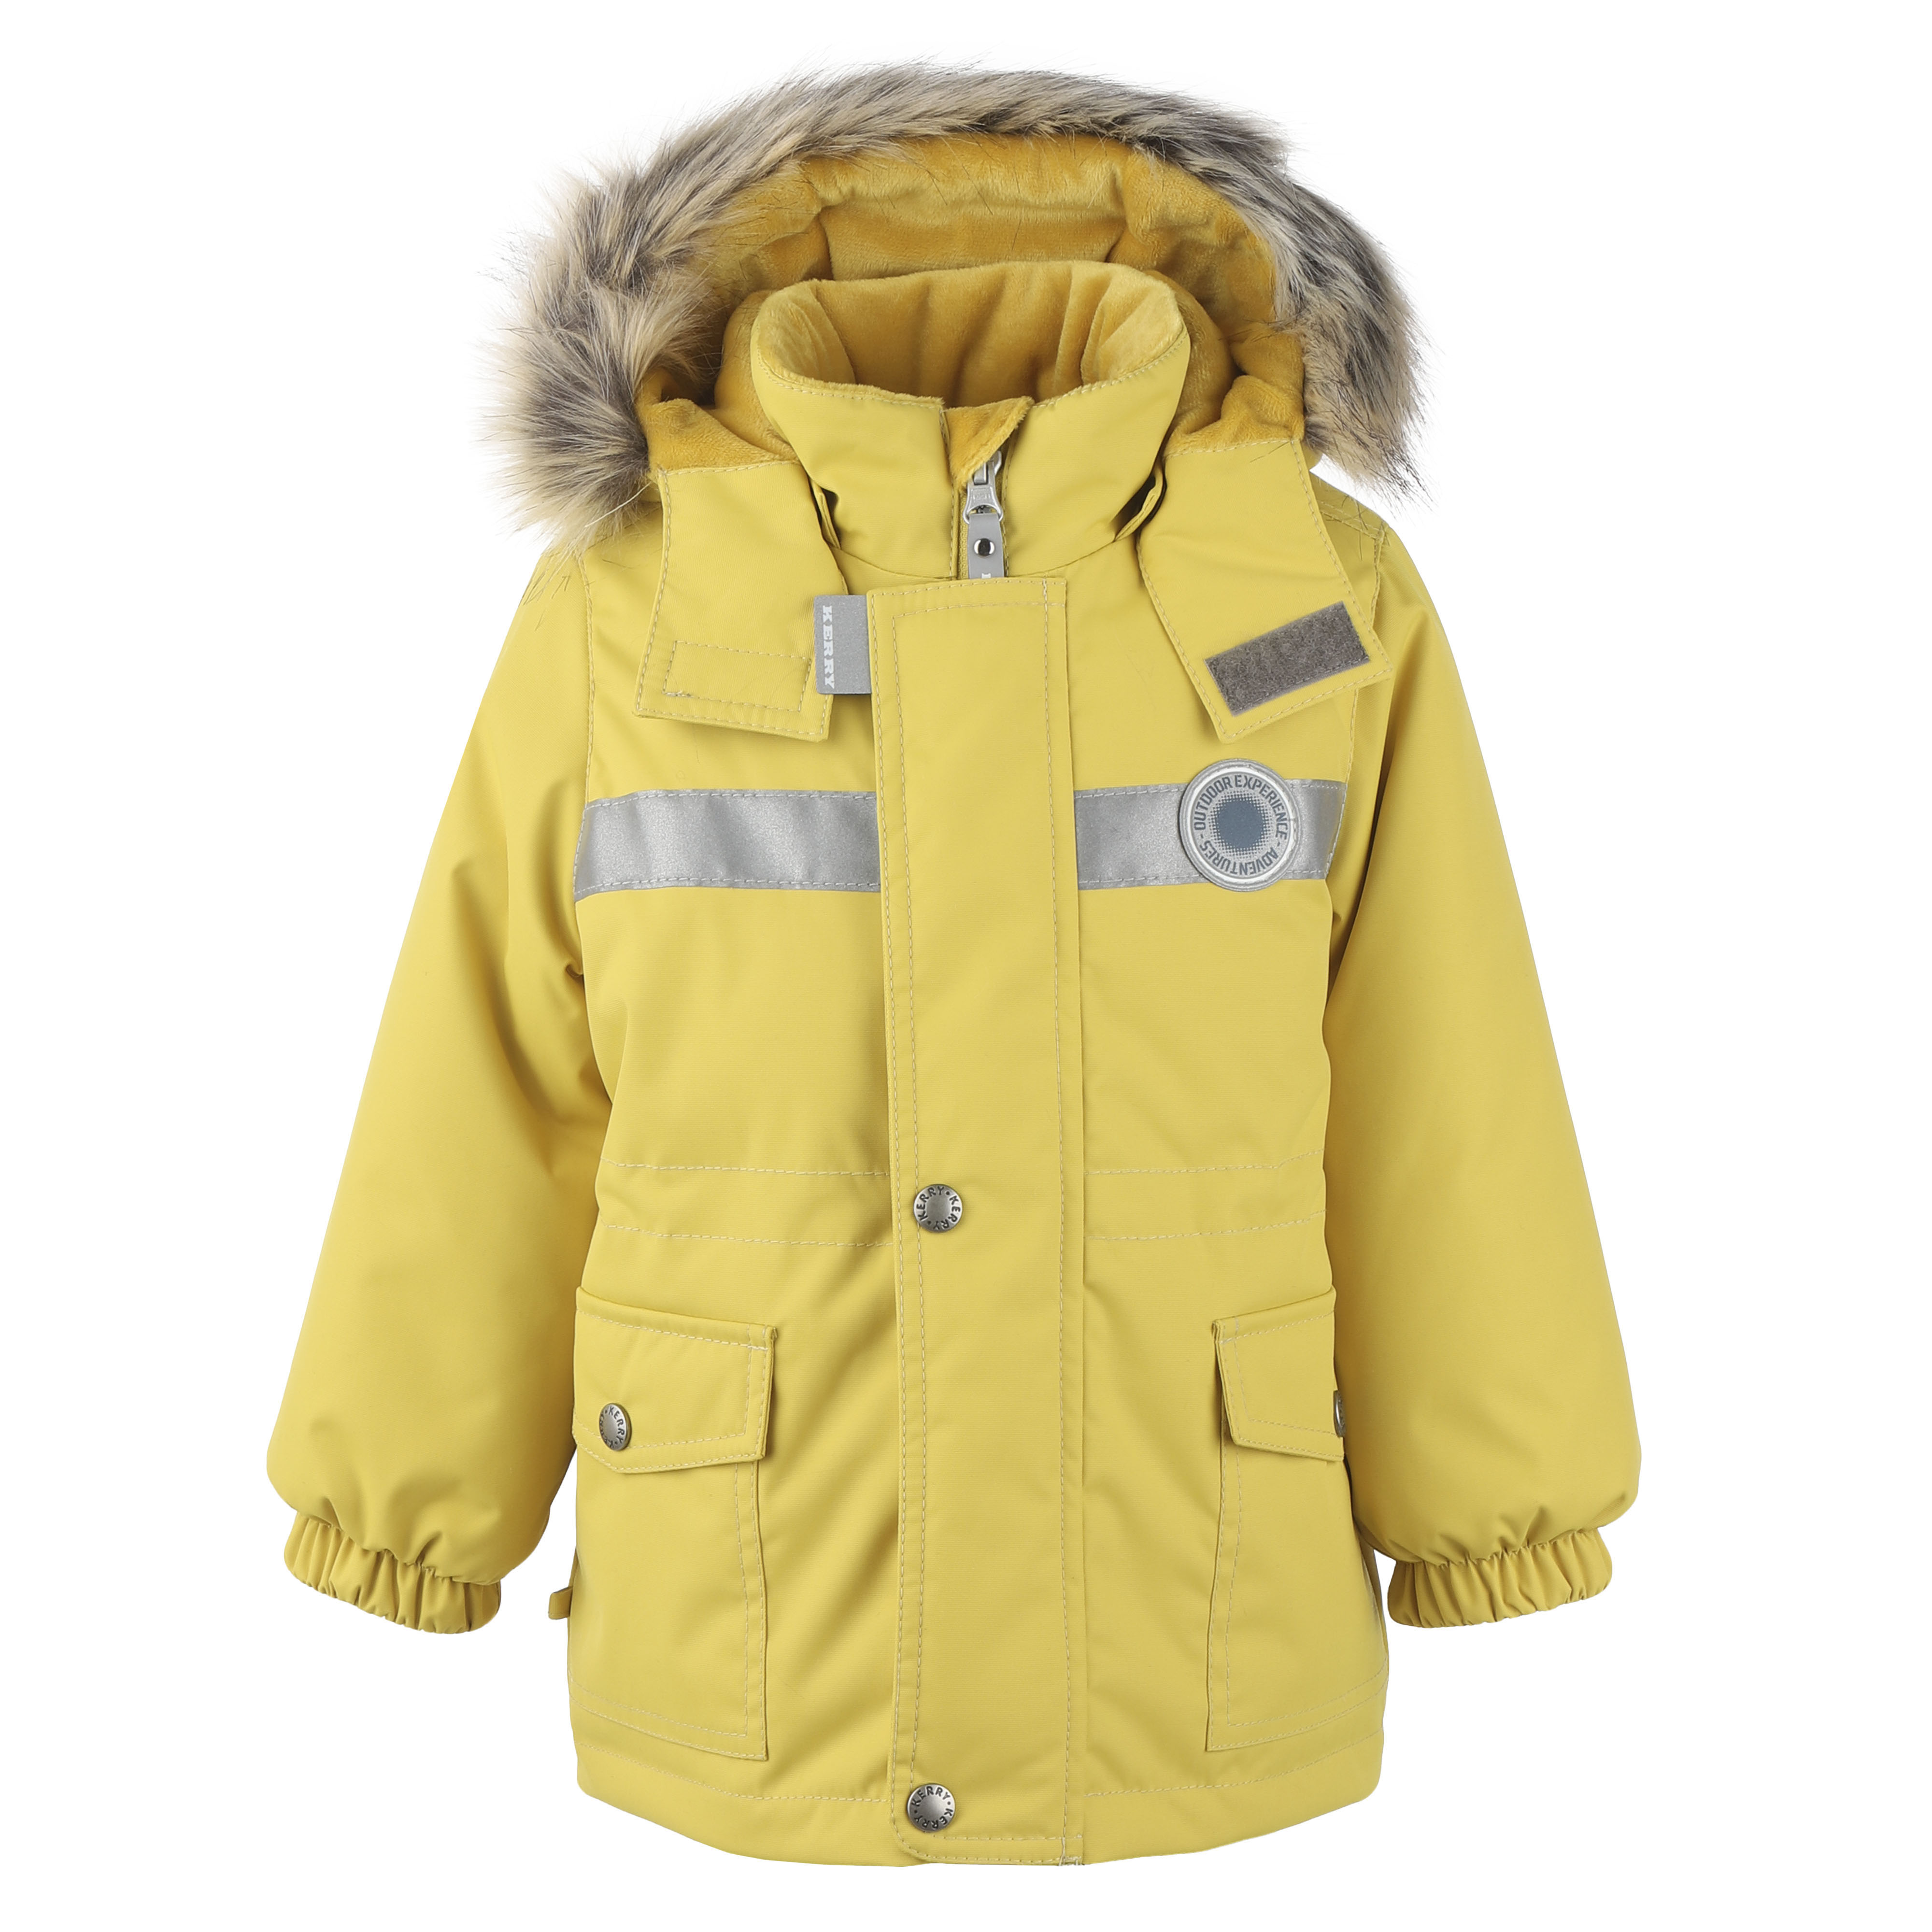 Куртка детская KERRY K20411_2021_NM цв. желтый р. 80